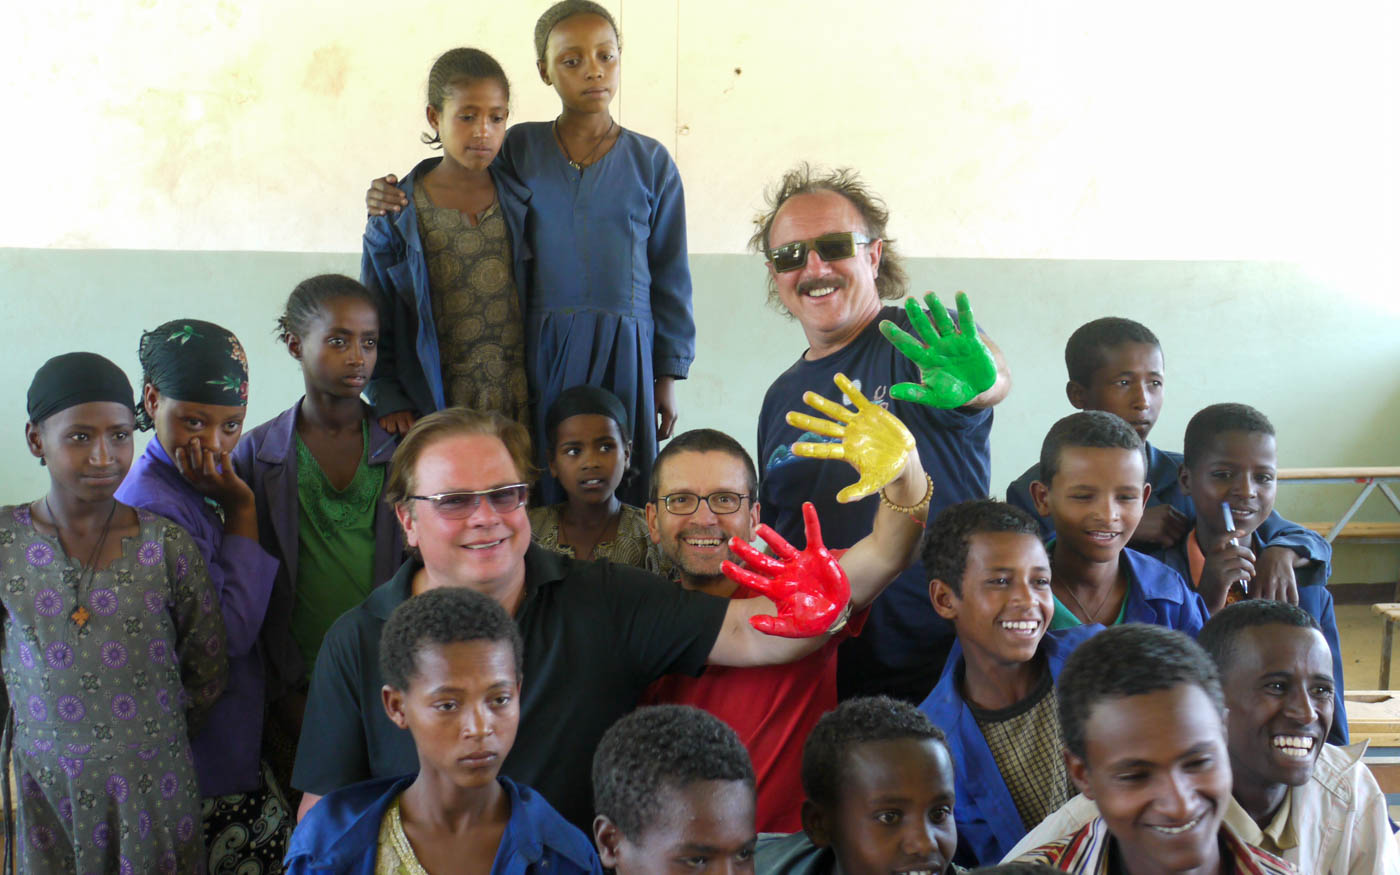 Mitglieder von Opus mit bunt angemalten Händen umringt von äthiopischen Kindern